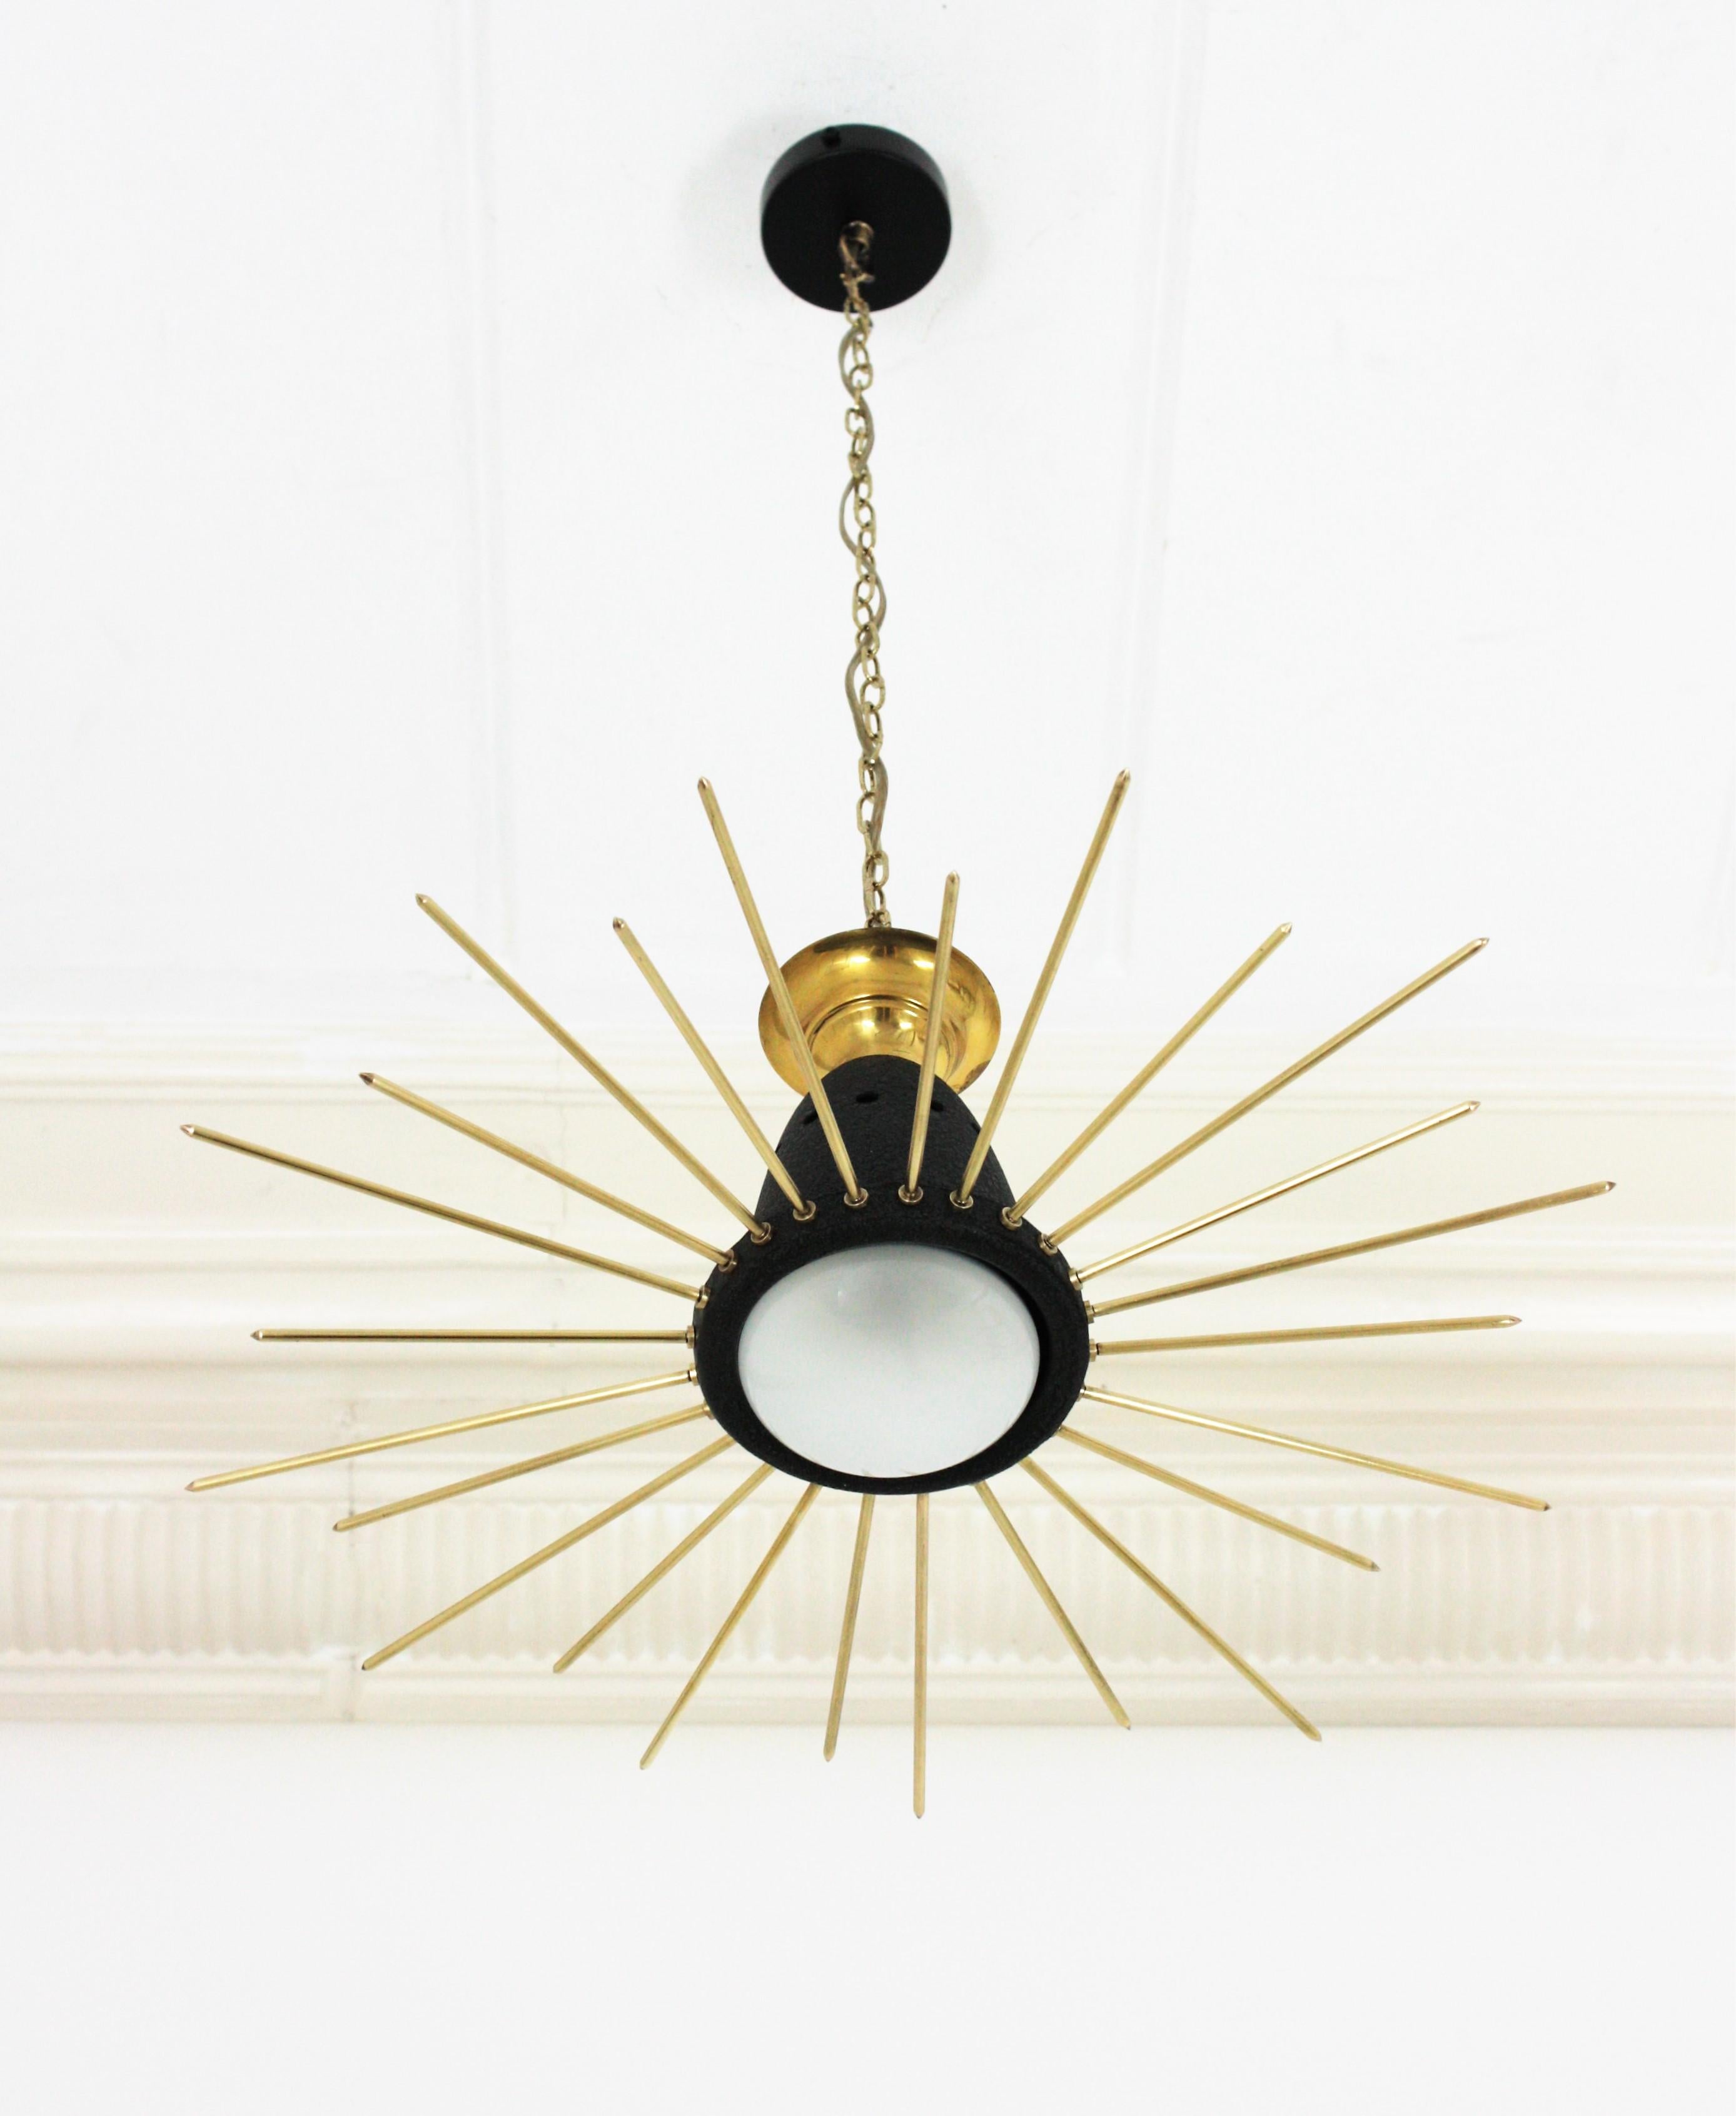 Mid-Century Modern Italian Sunburst Flush Mount Pendant Light, Brass and Black Metal, 1950s For Sale